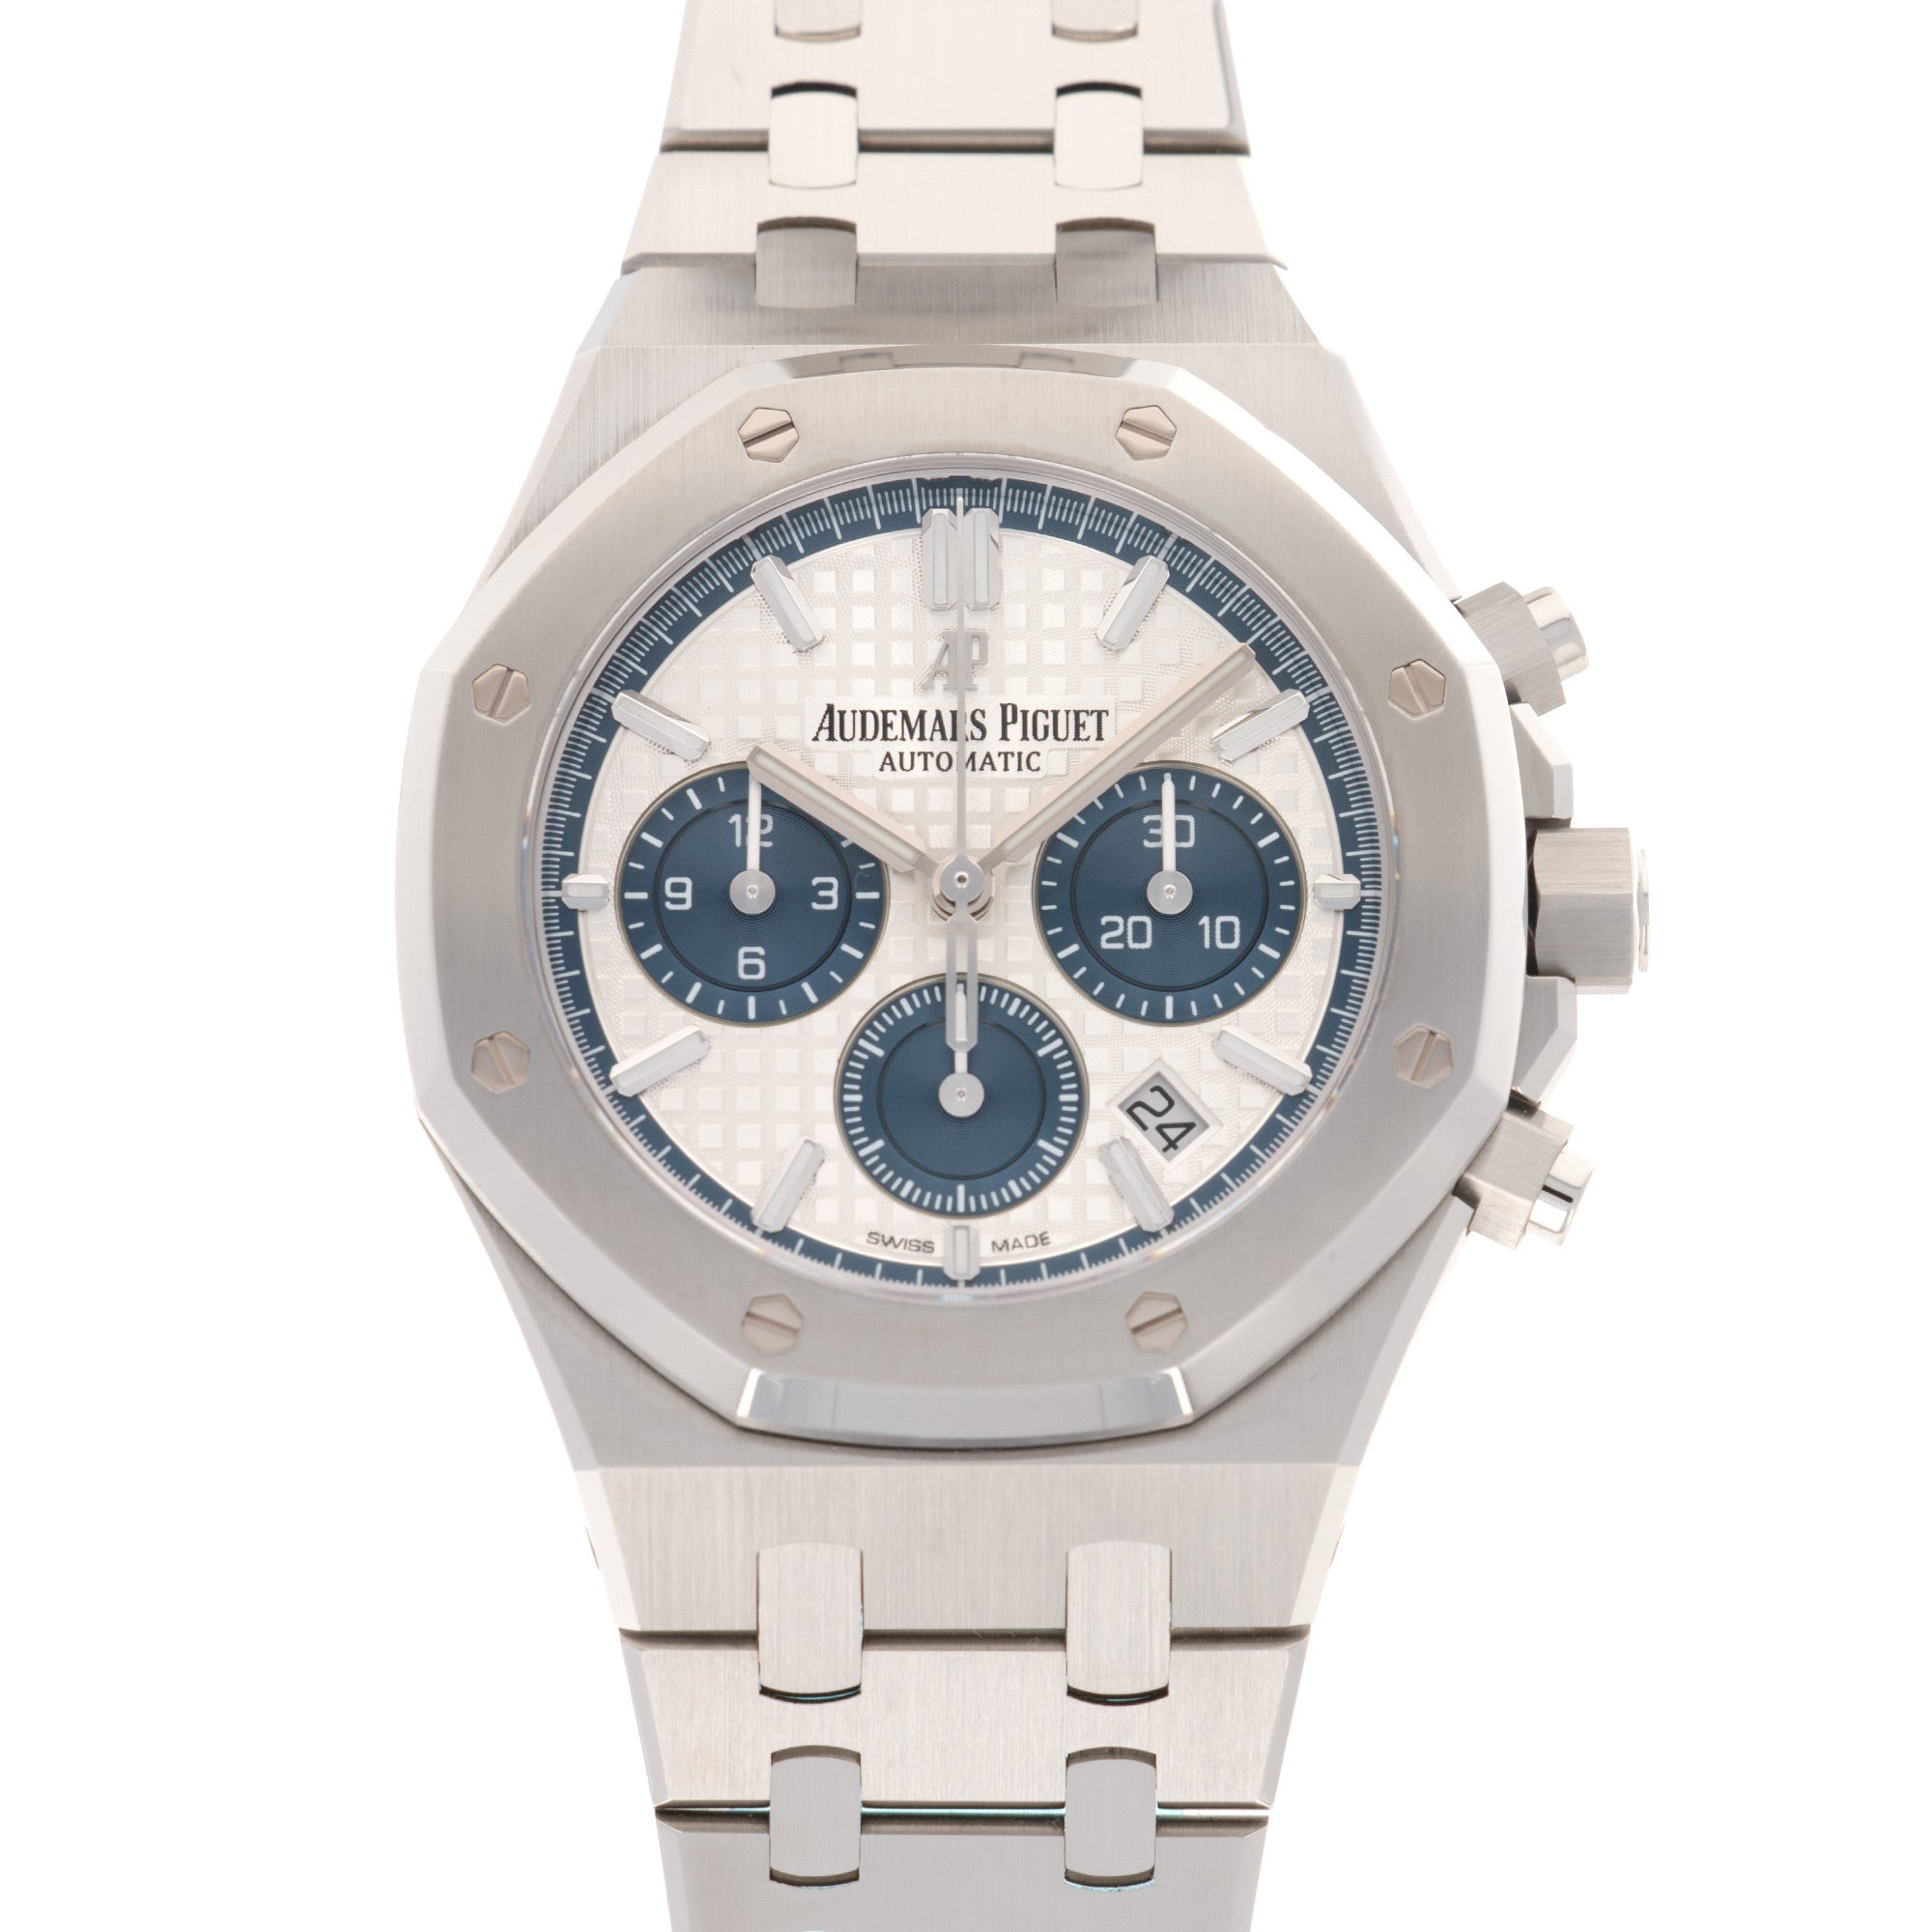 Audemars Piguet - Audemars Piguet Royal Oak Chronograph Watch Ref. 26315 - The Keystone Watches